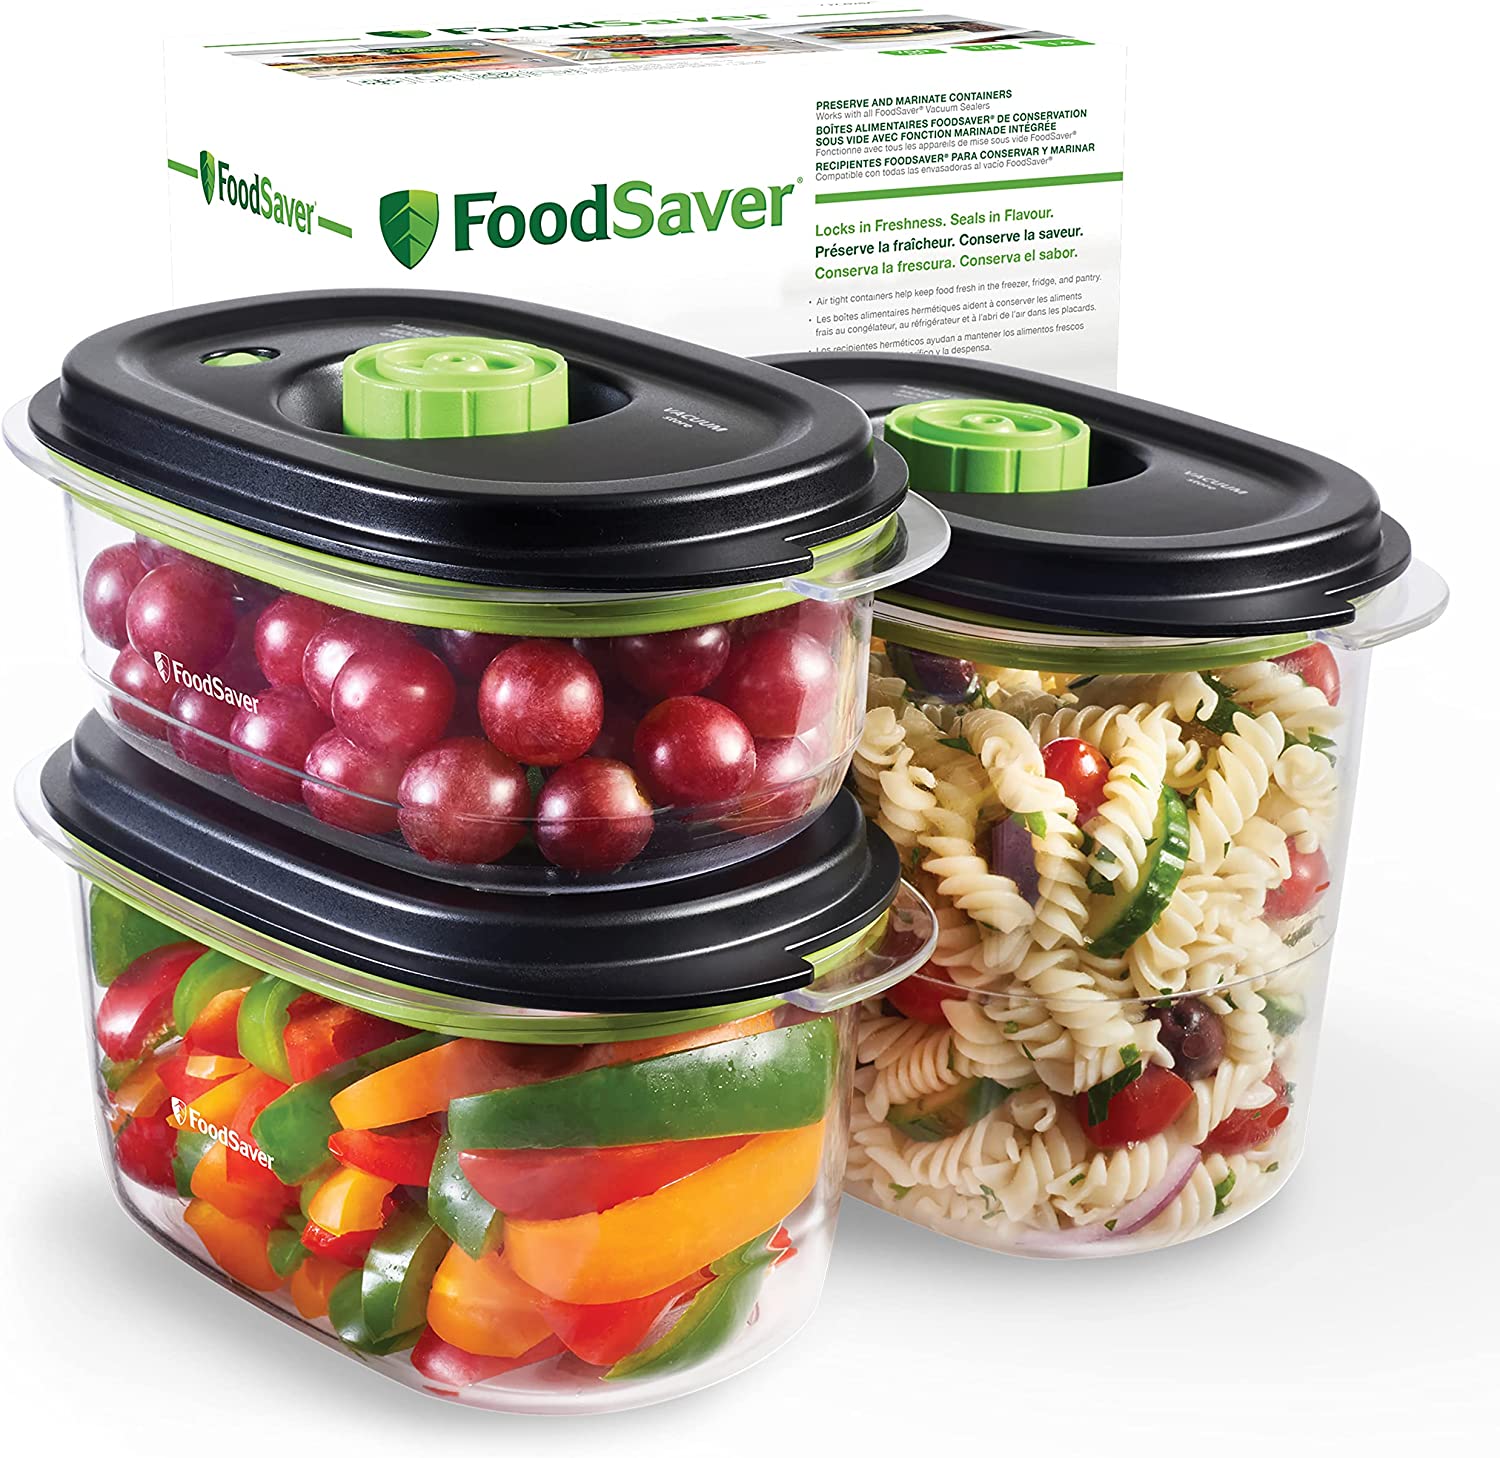 FoodSaver recipientes para conservar al vacío